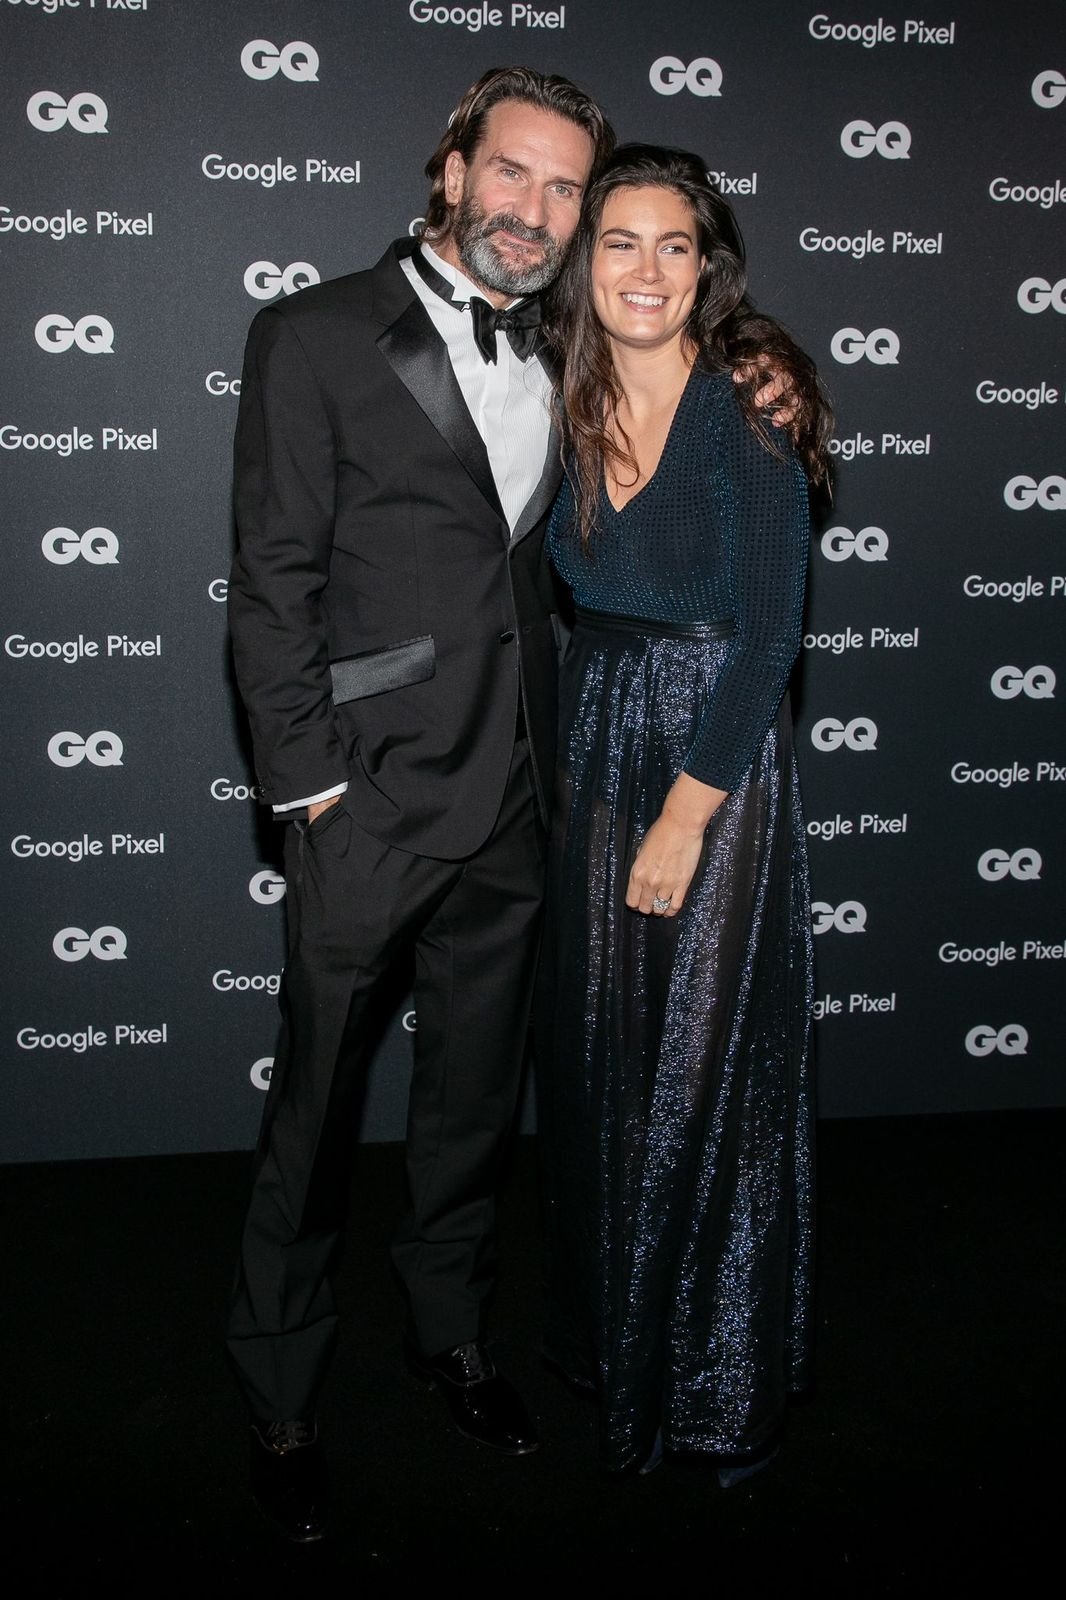 L'animateur Frédéric Beigbeder et son épouse Lara Micheli assistent à la remise des prix GQ Men of the Year 2018 au Centre Pompidou le 26 novembre 2018 à Paris, France. | Photo : Getty Images